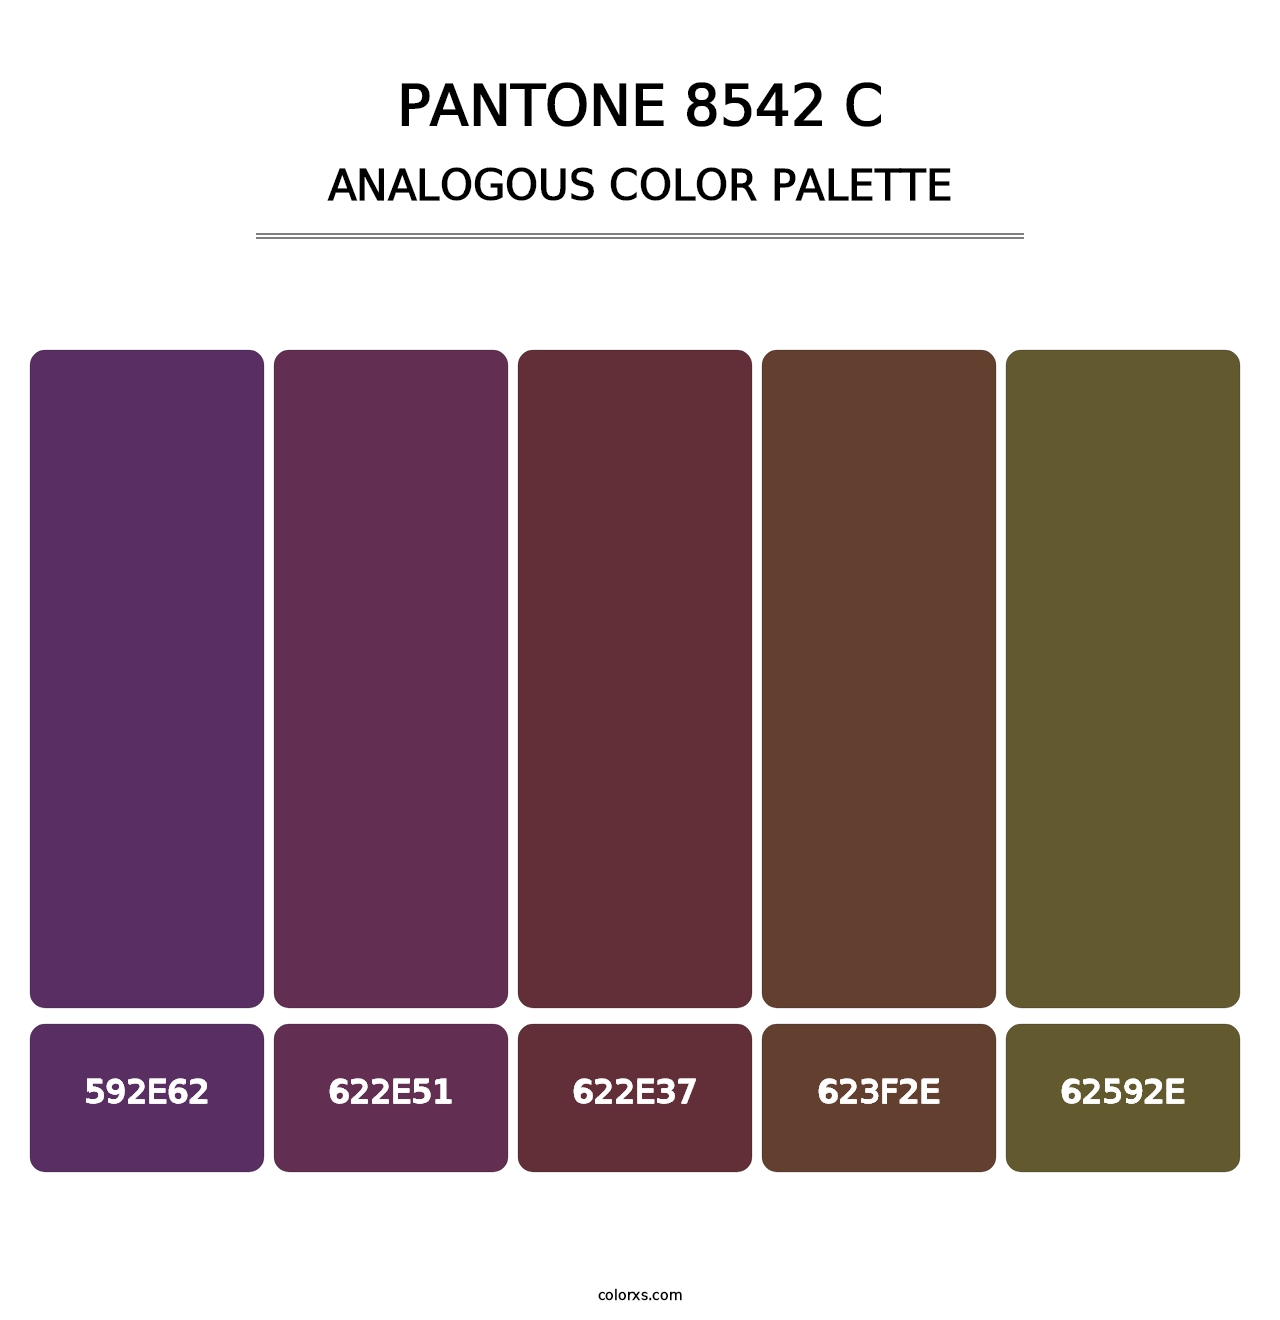 PANTONE 8542 C - Analogous Color Palette